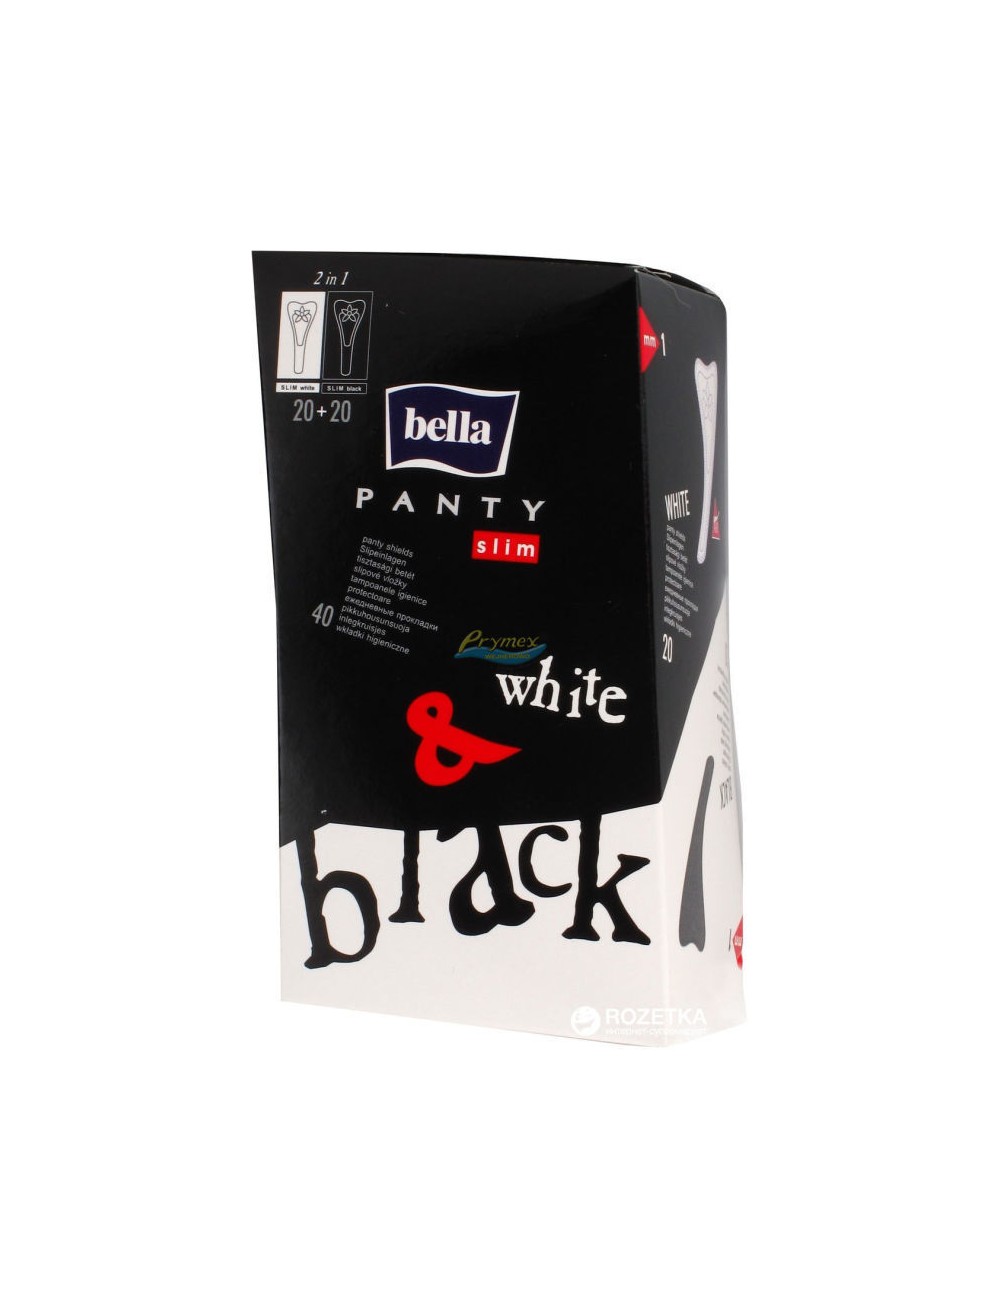 Bella Panty Slim Black and White Super Cienkie Wkładki Higieniczne dla Kobiet 40 szt 